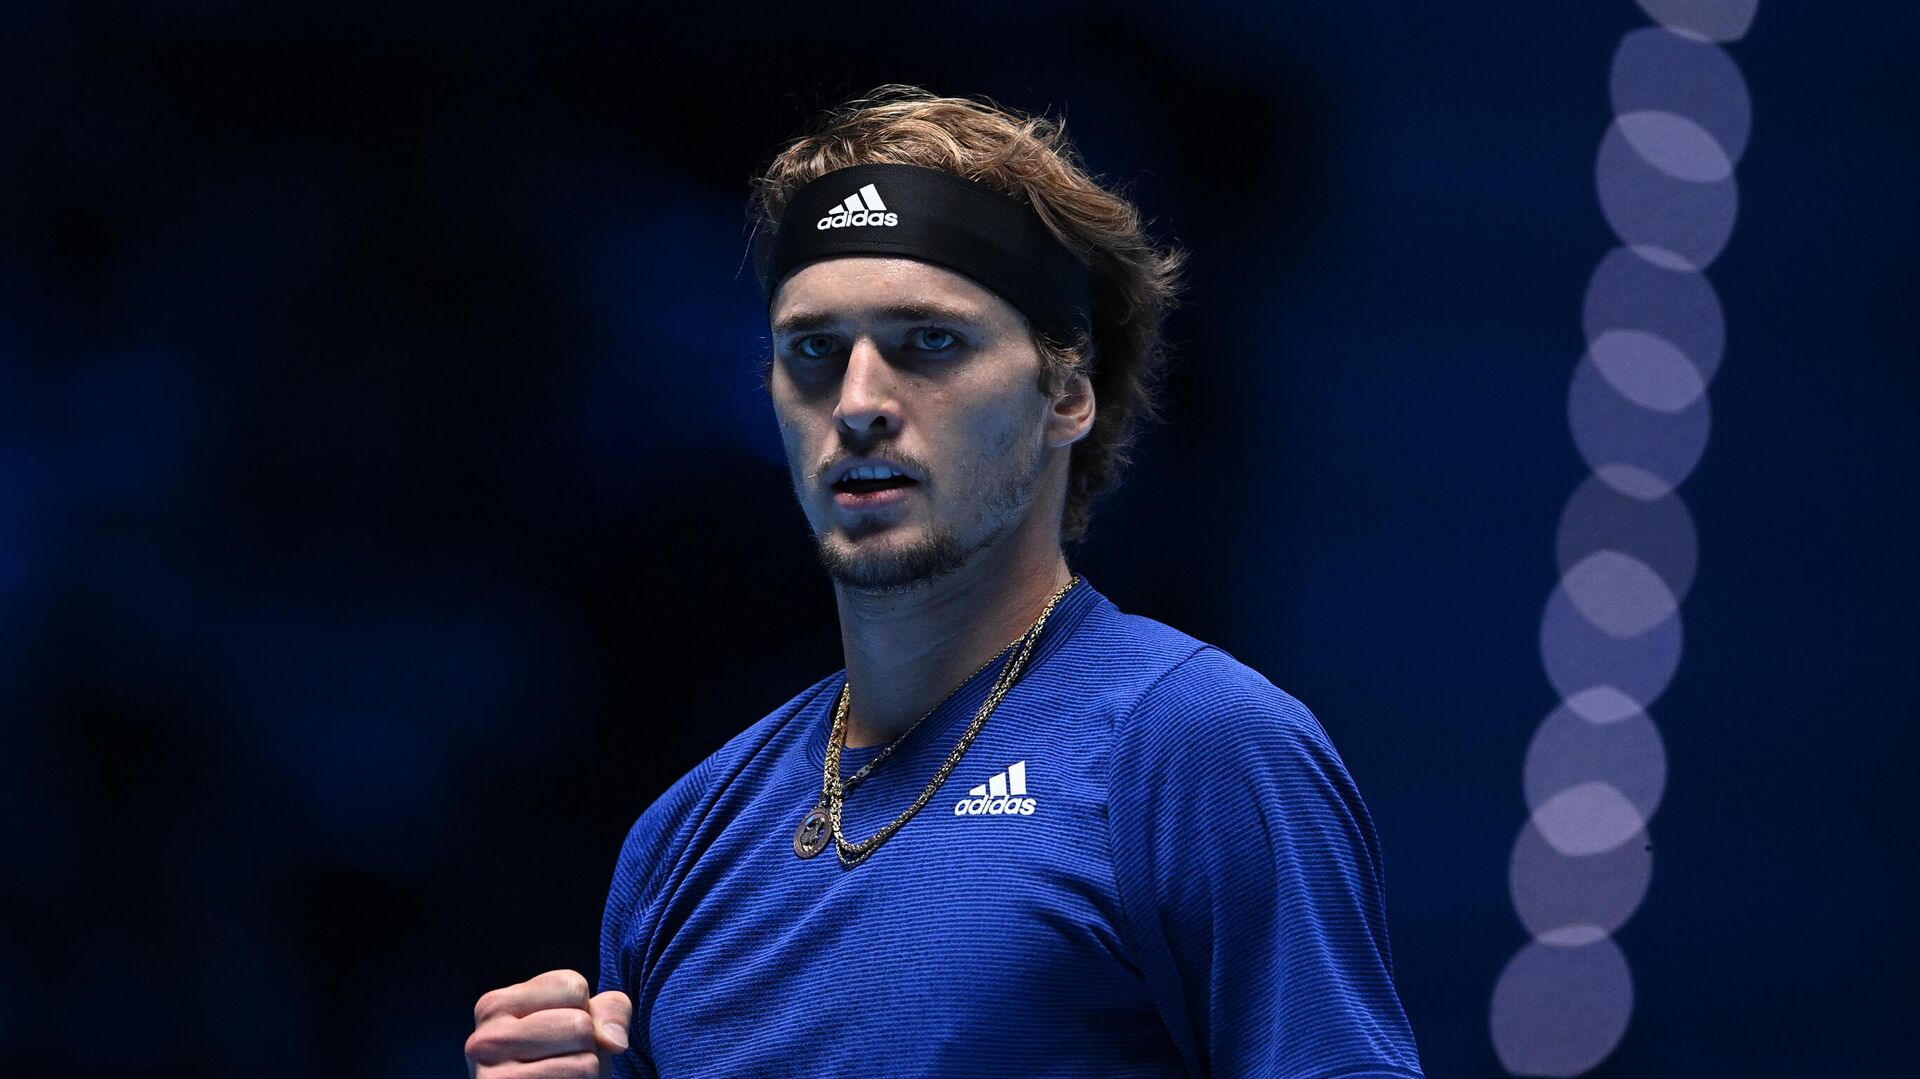 Немецкий теннисист Зверев вышел в четвертьфинал турнира в Монпелье